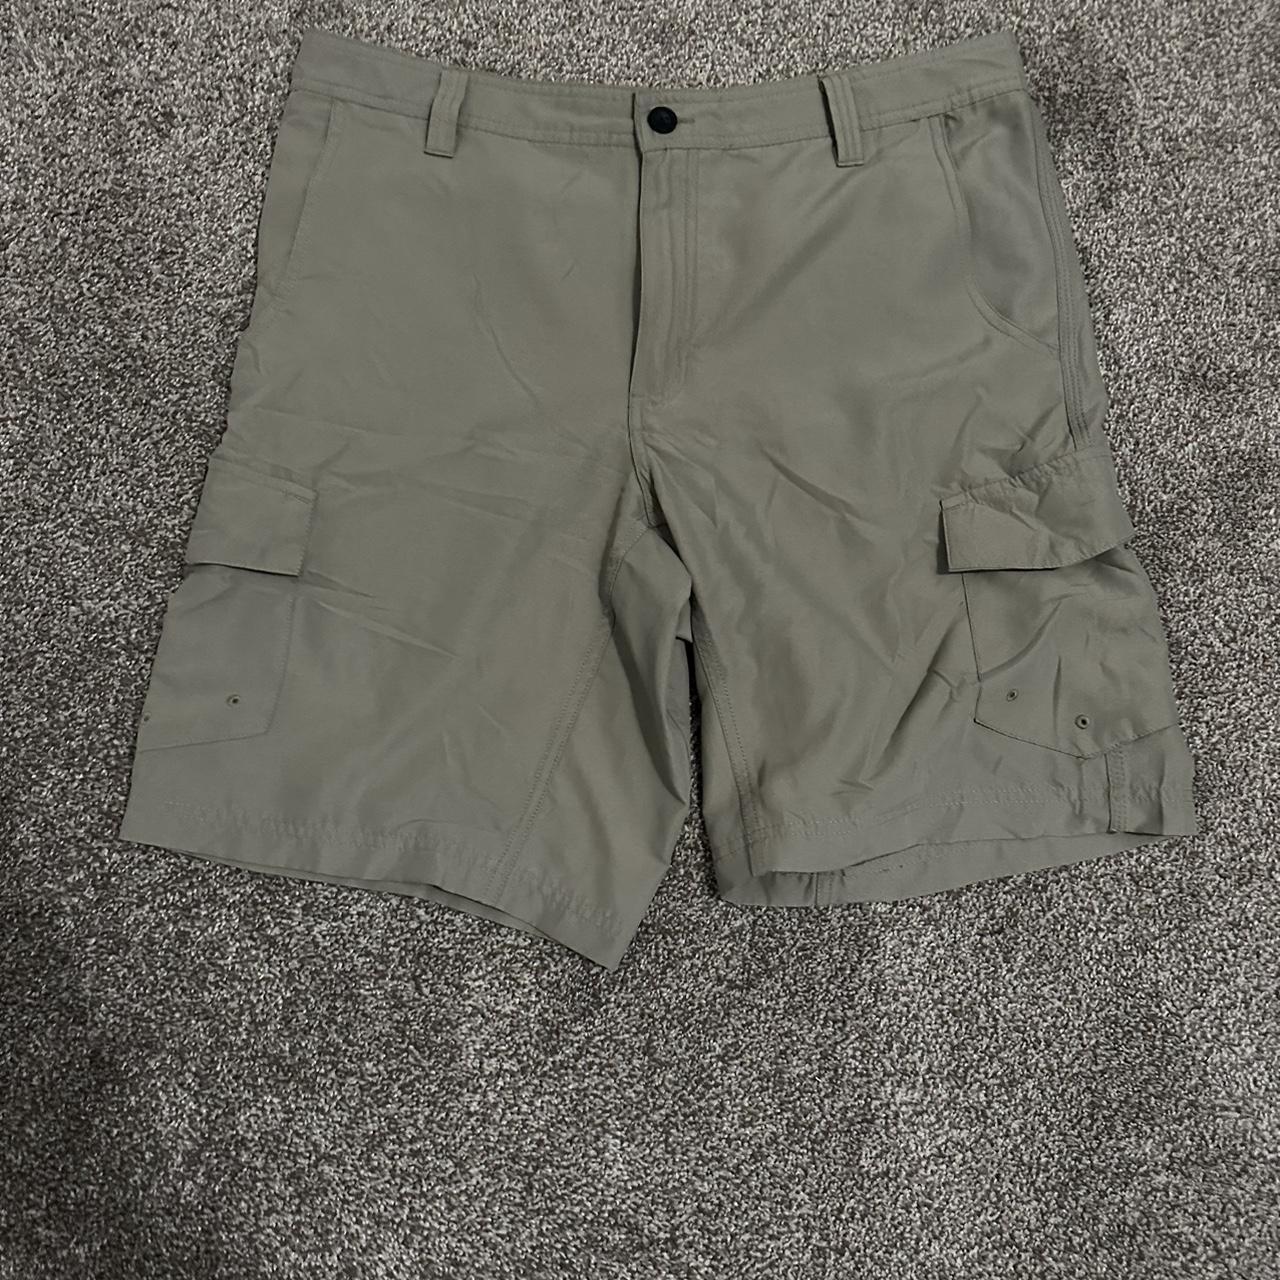 Green Magellan Fishing Shorts - Depop